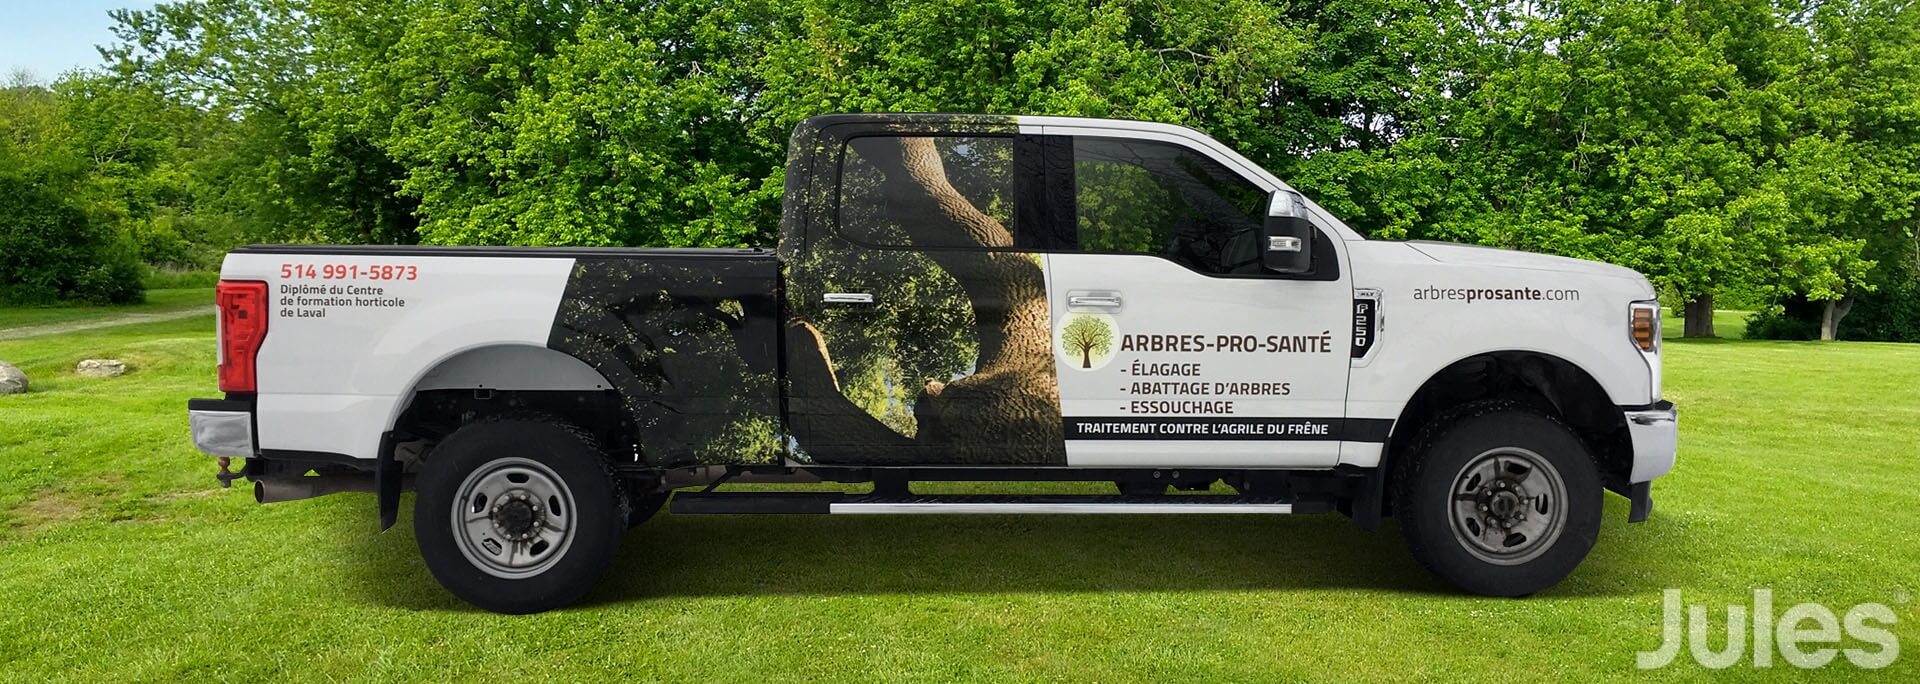 lettrage paysagiste arbres pro santé ford f-250 jules communications wrap lettrage camion